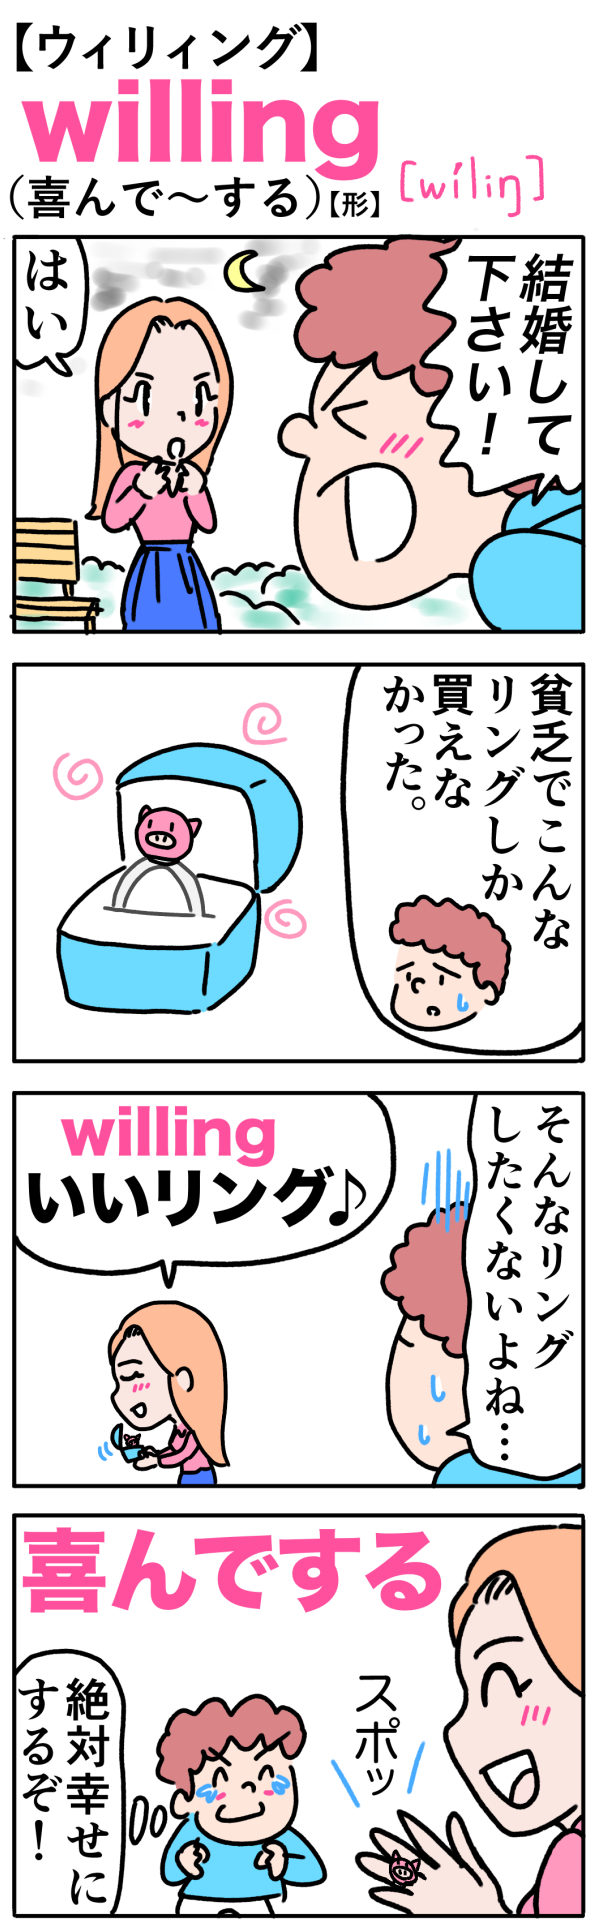 willing（喜んで〜する）の語呂合わせ英単語